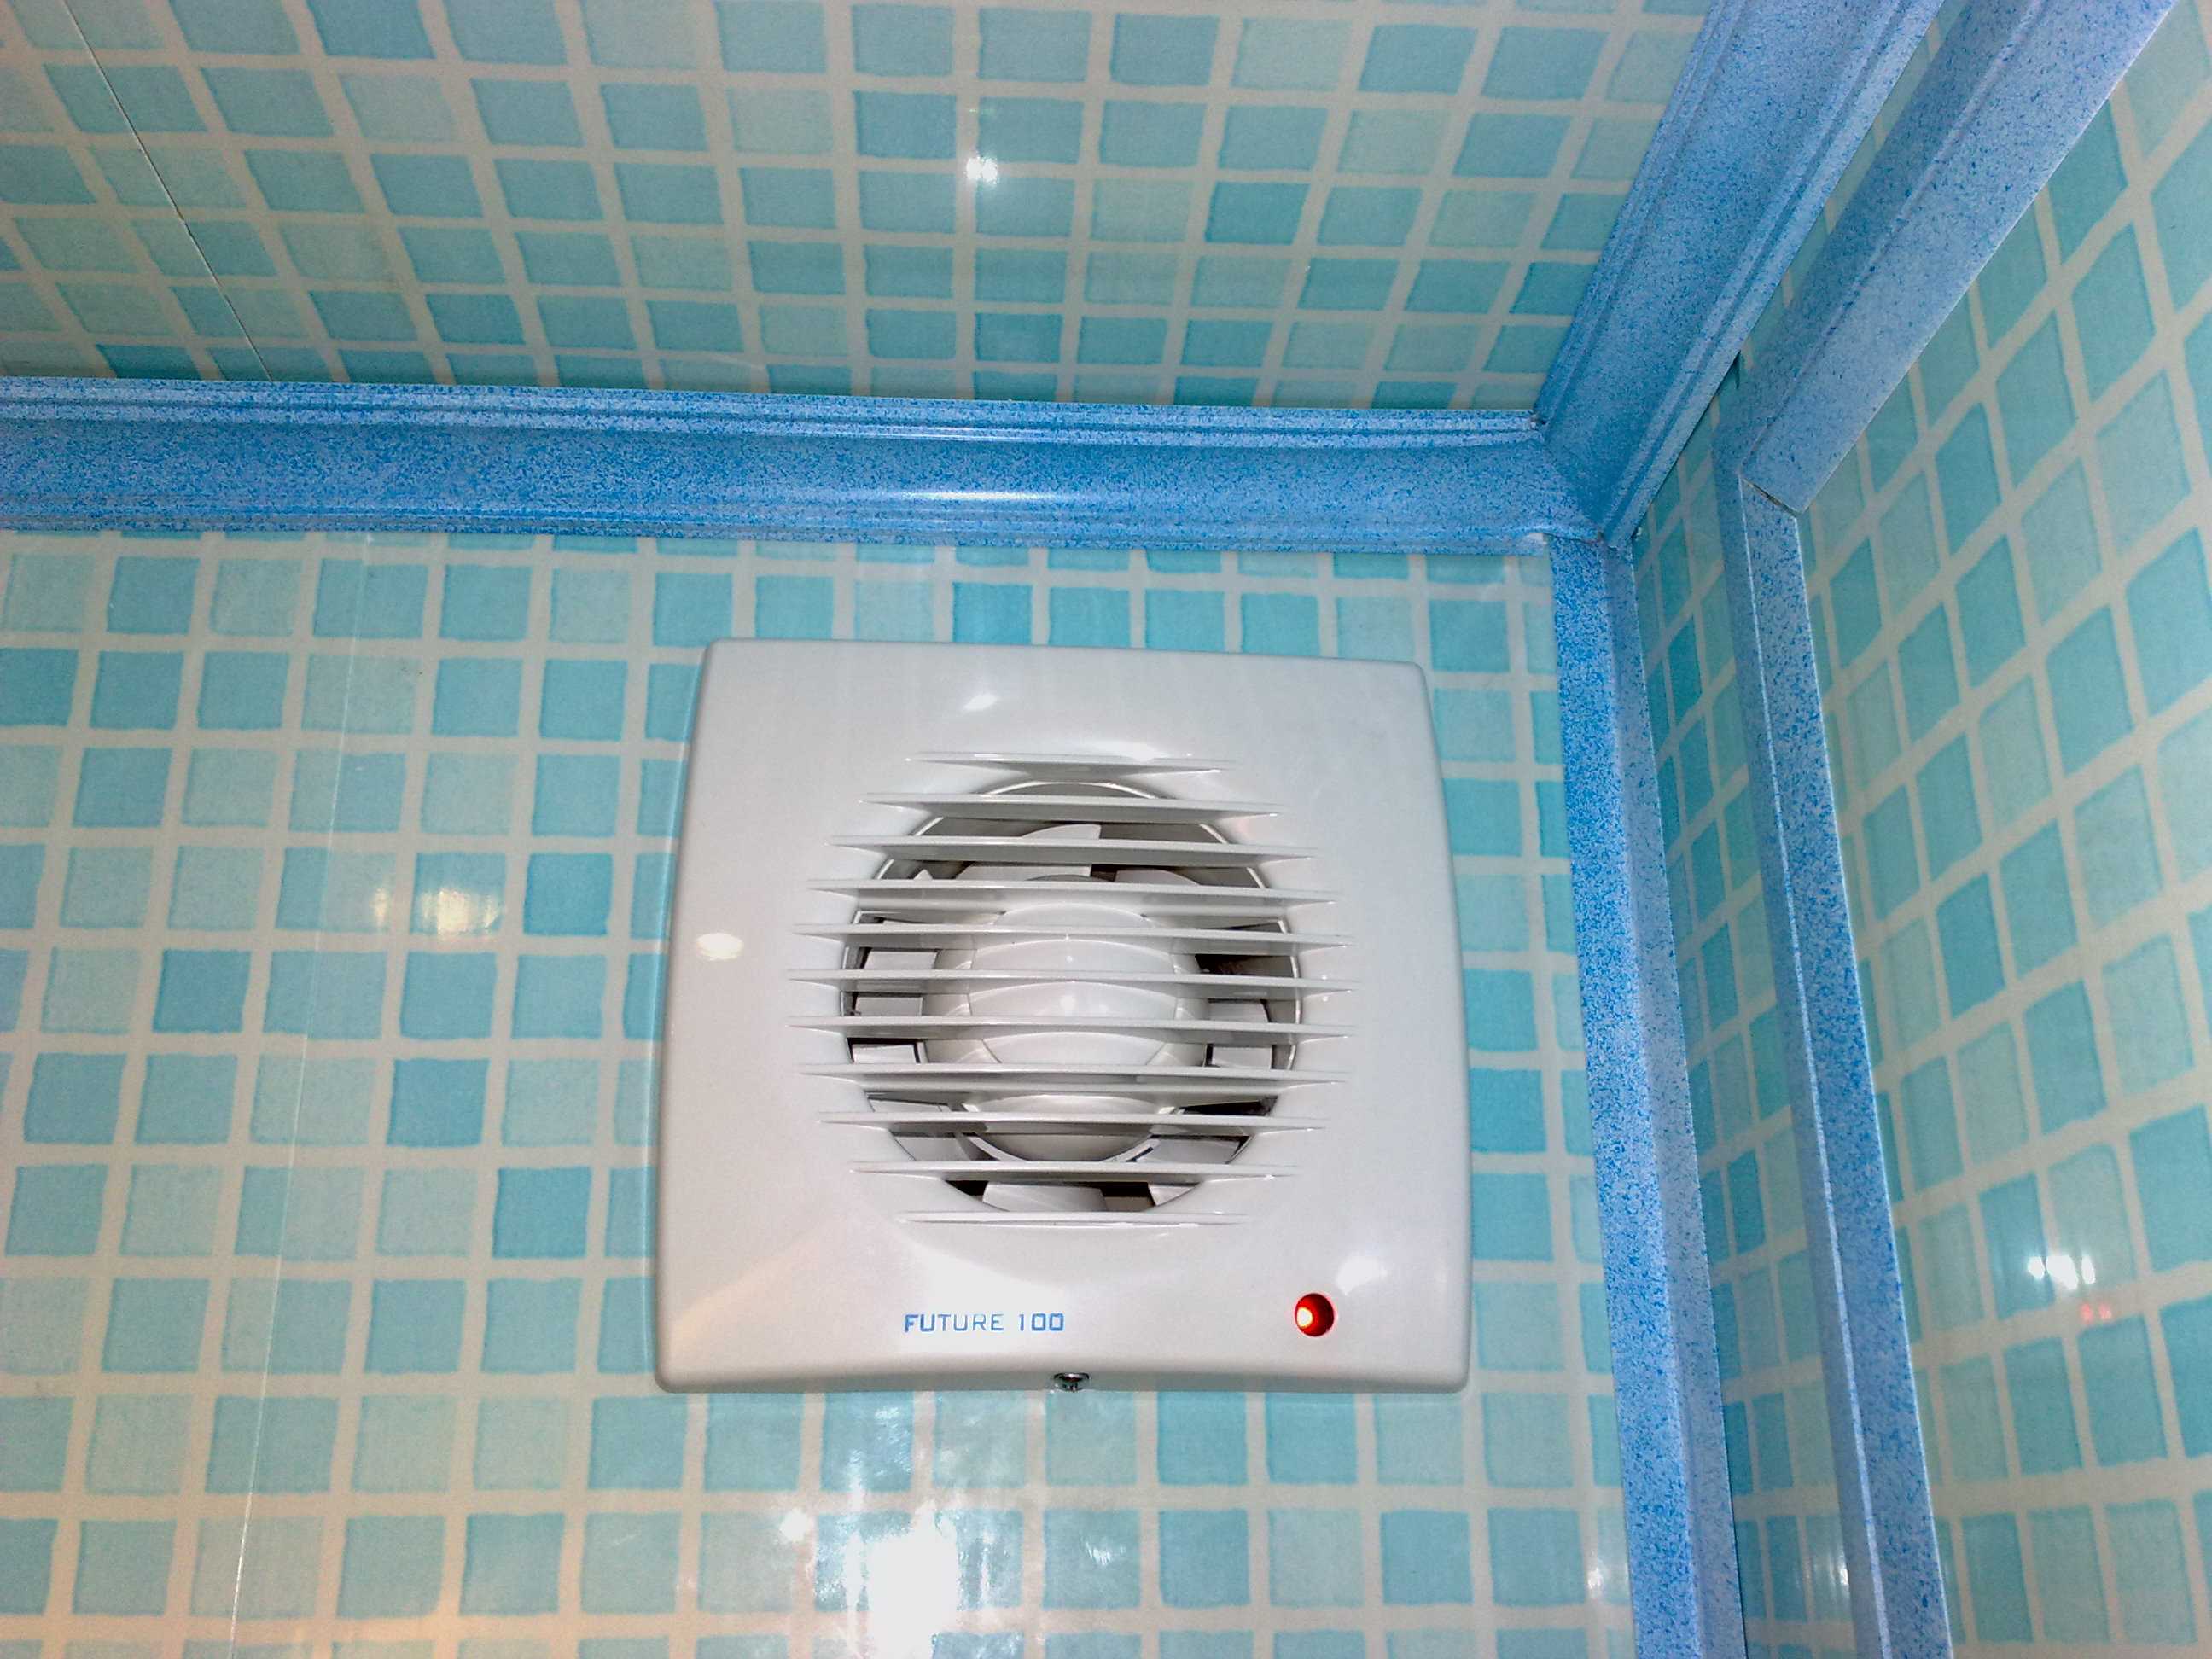 Вентиляторы в туалет: обзор видов и производителей, советы по выбору